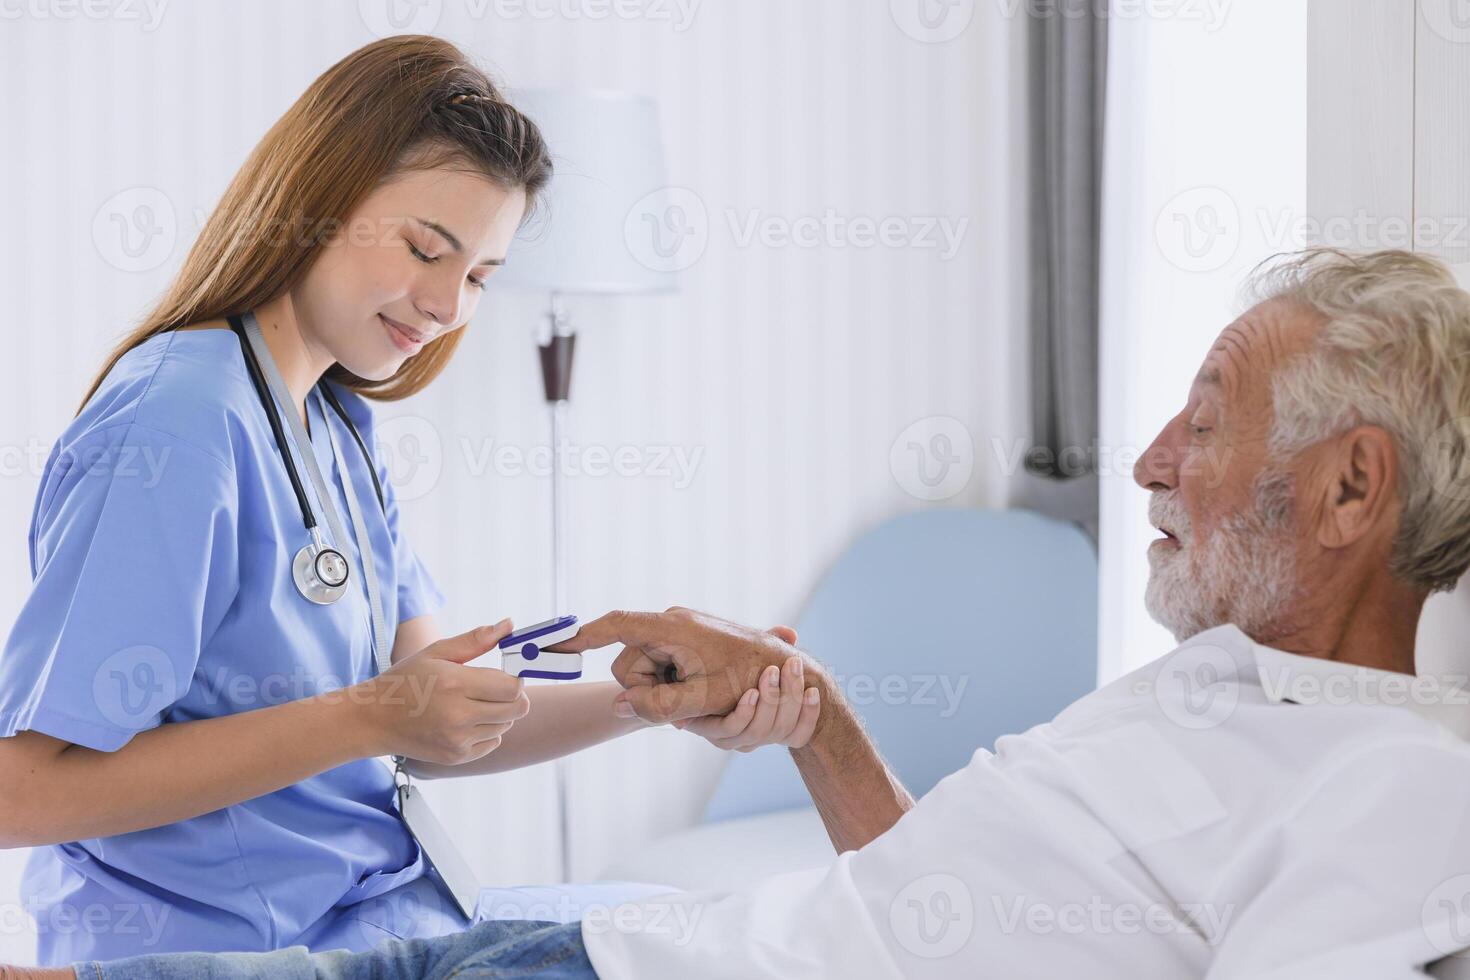 Krankenschwester Arzt Arbeiten beim Zuhause Pflege medizinisch Untersuchung mit Fingerspitze Pause Oximeter Maße Blut Sauerstoff Sättigung Niveau Senior ältere foto